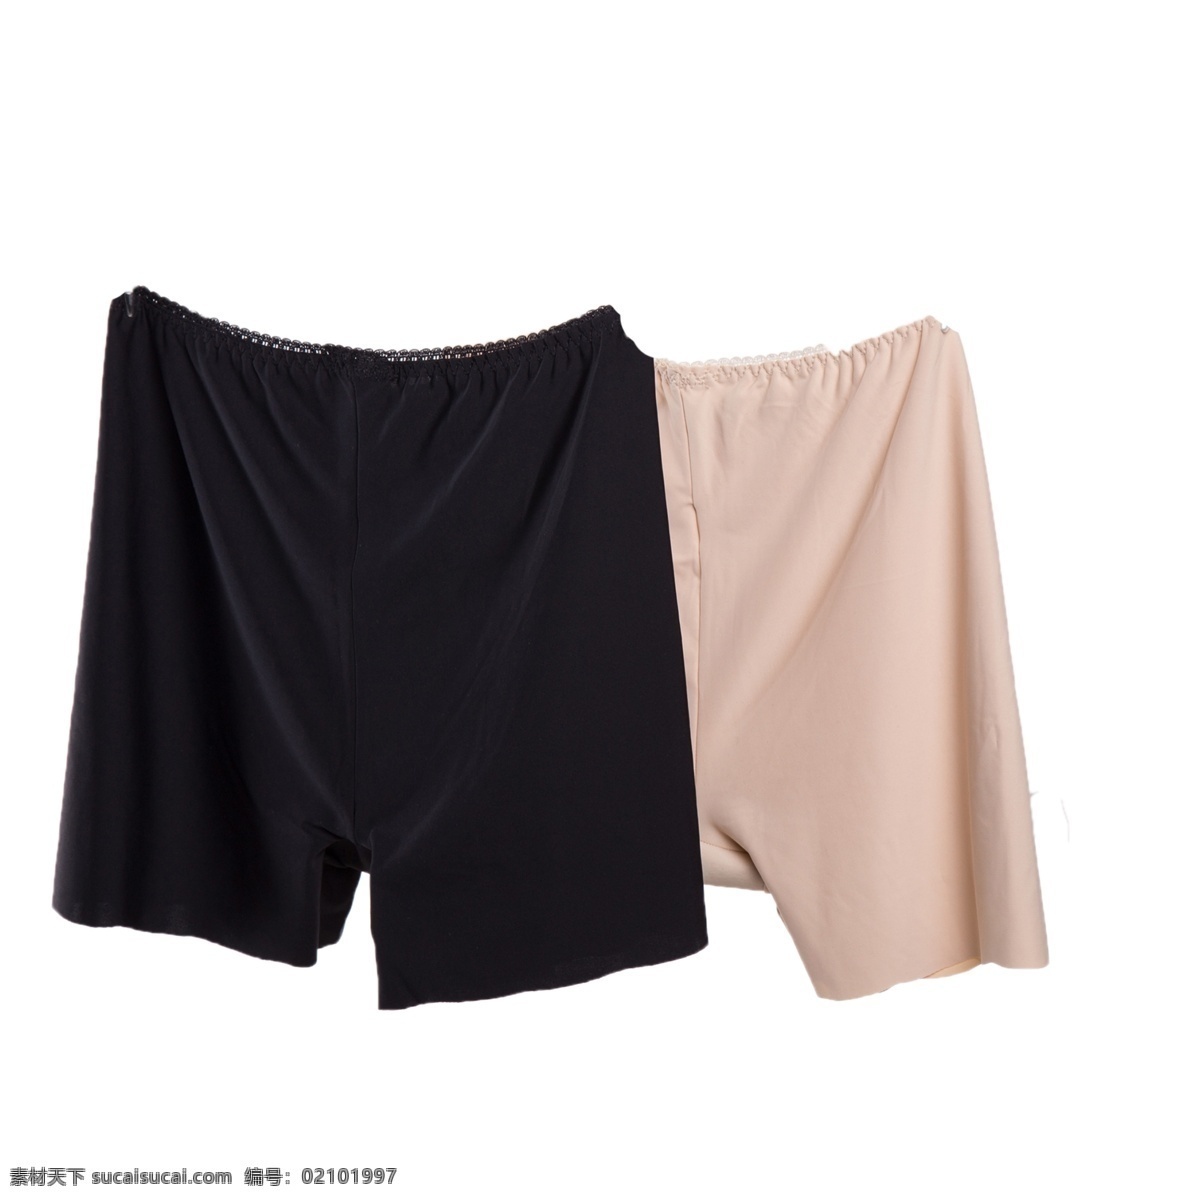 两个 颜色 短裤 舒适 浅色的 简约 时尚 品牌 内衣 裤头 服装 耐用 纯色 健康 无味 漂亮的